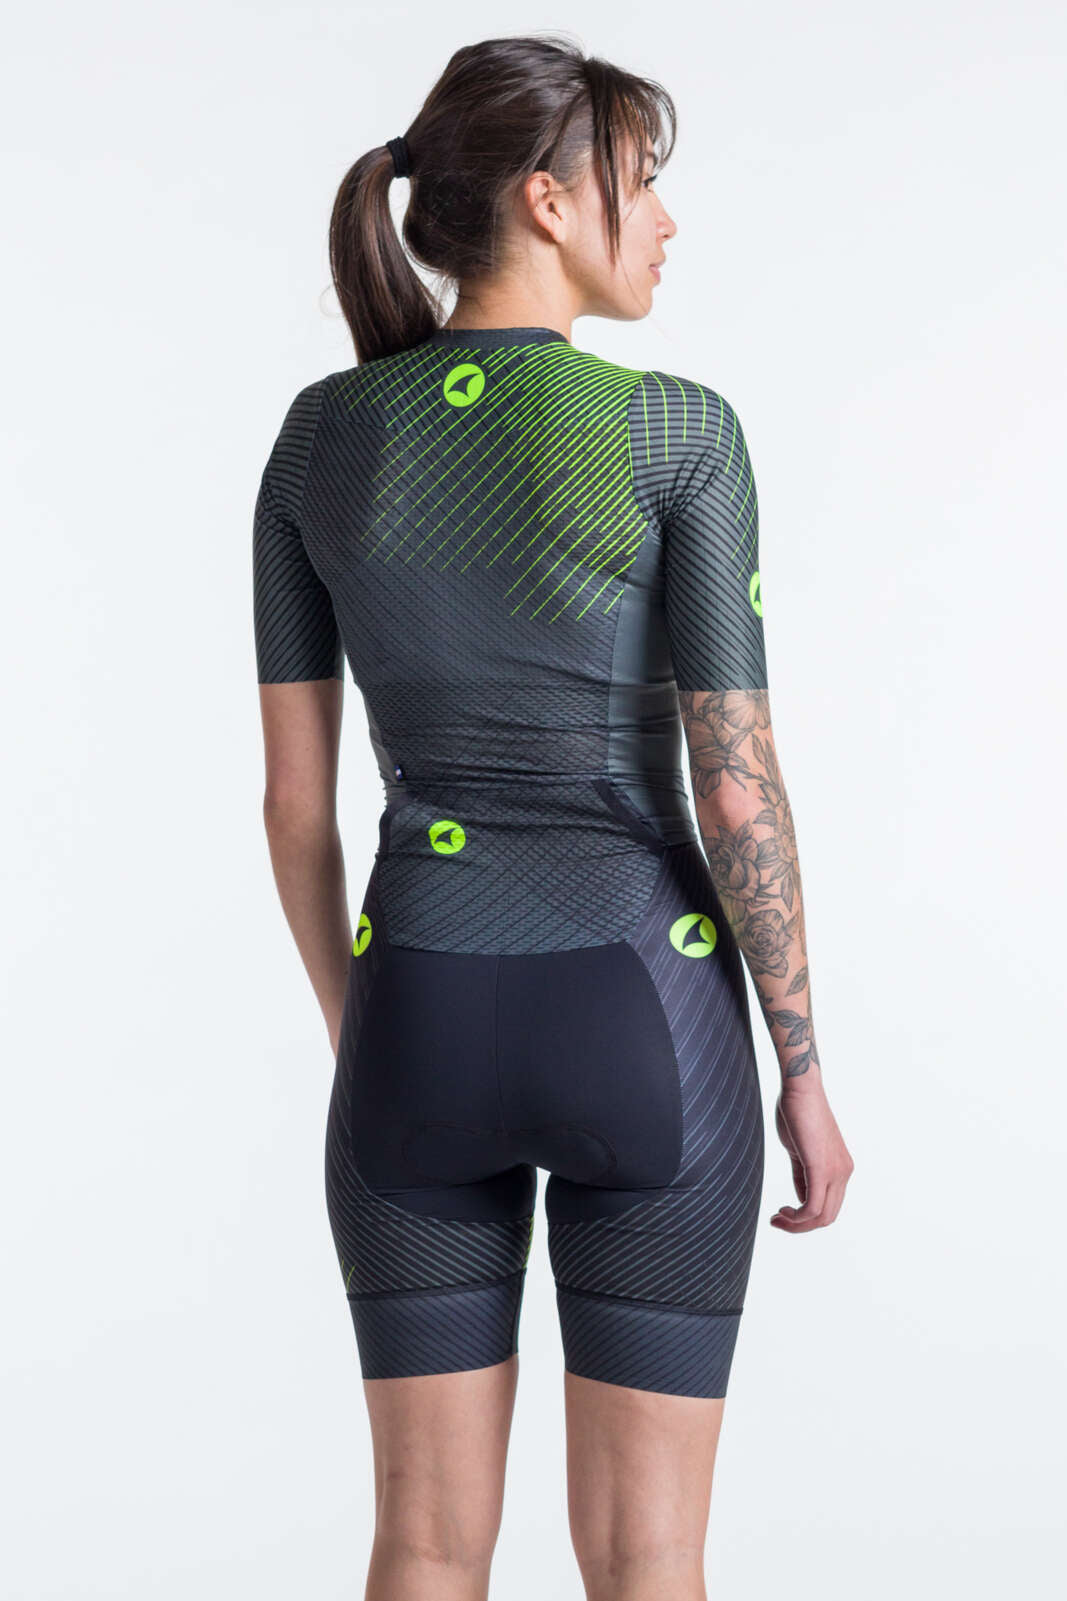 Women's Triathlon Suit - Black Back View